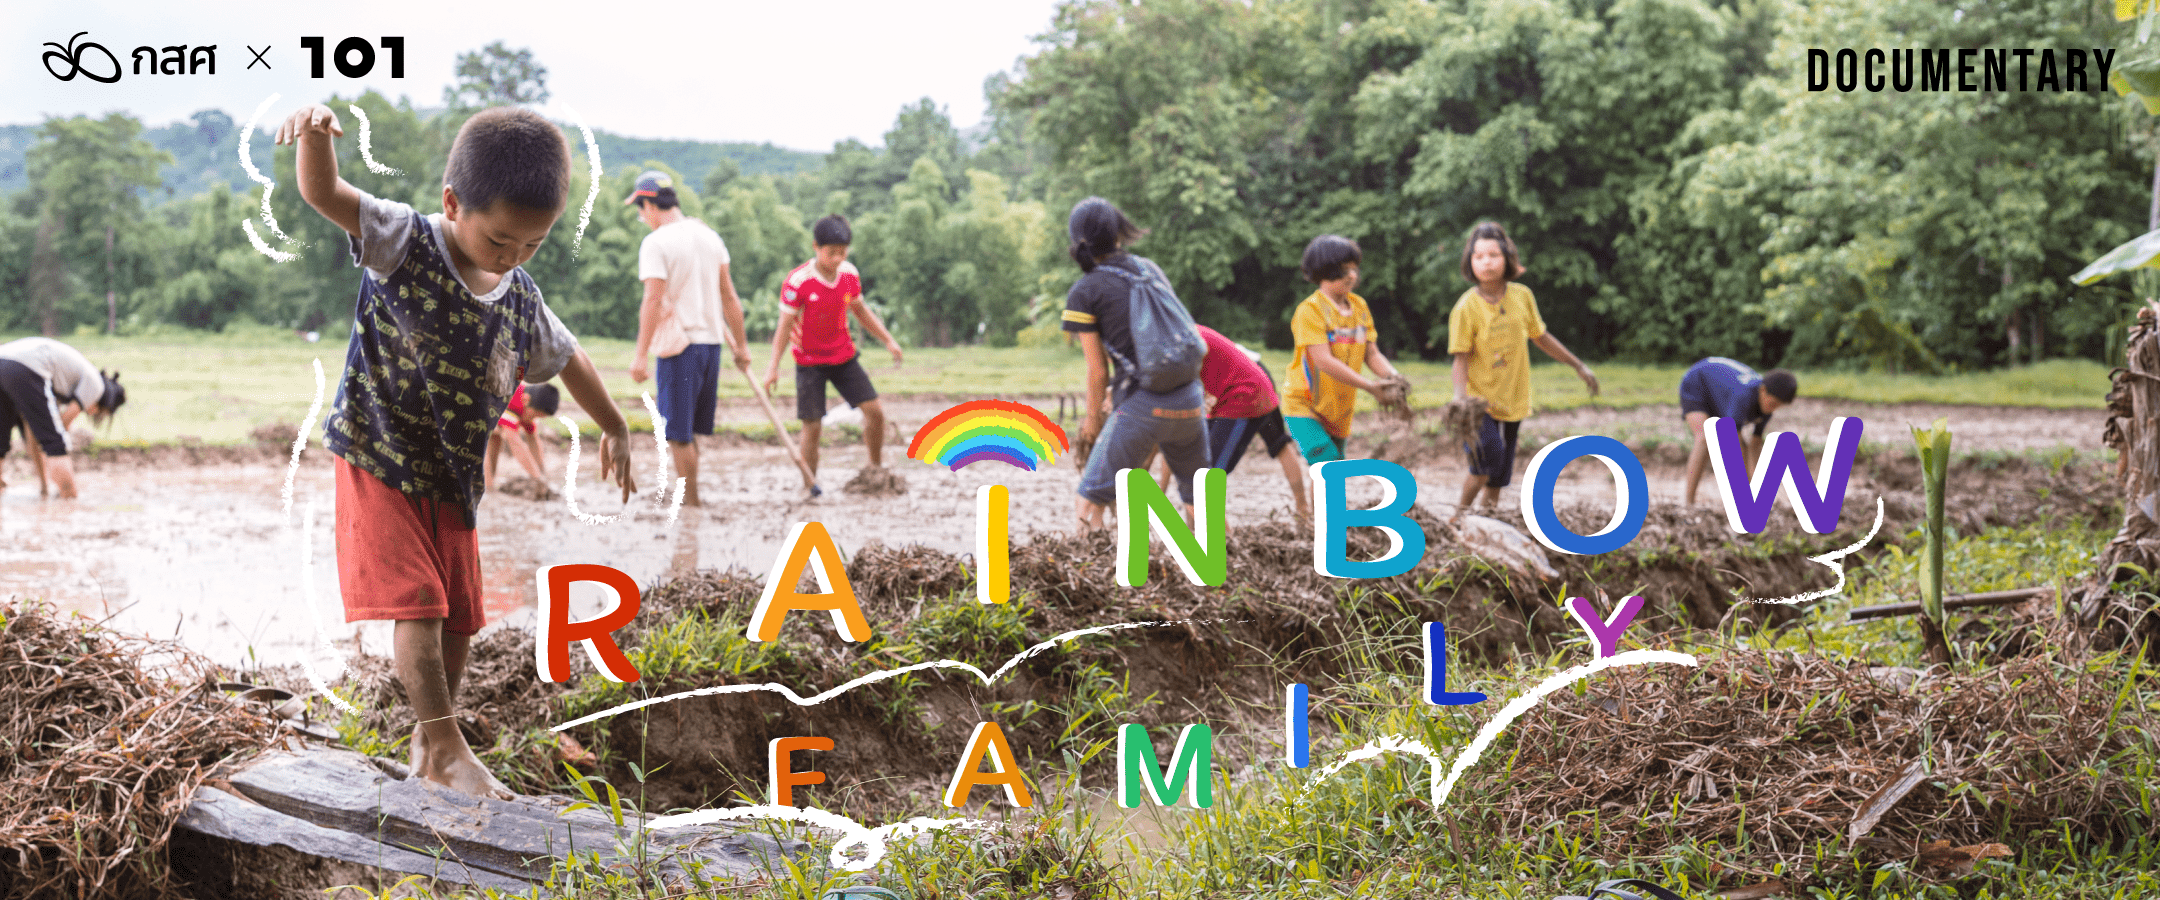 RAINBOW FAMILY : ชีวิตใหม่ฟ้าหลังฝน